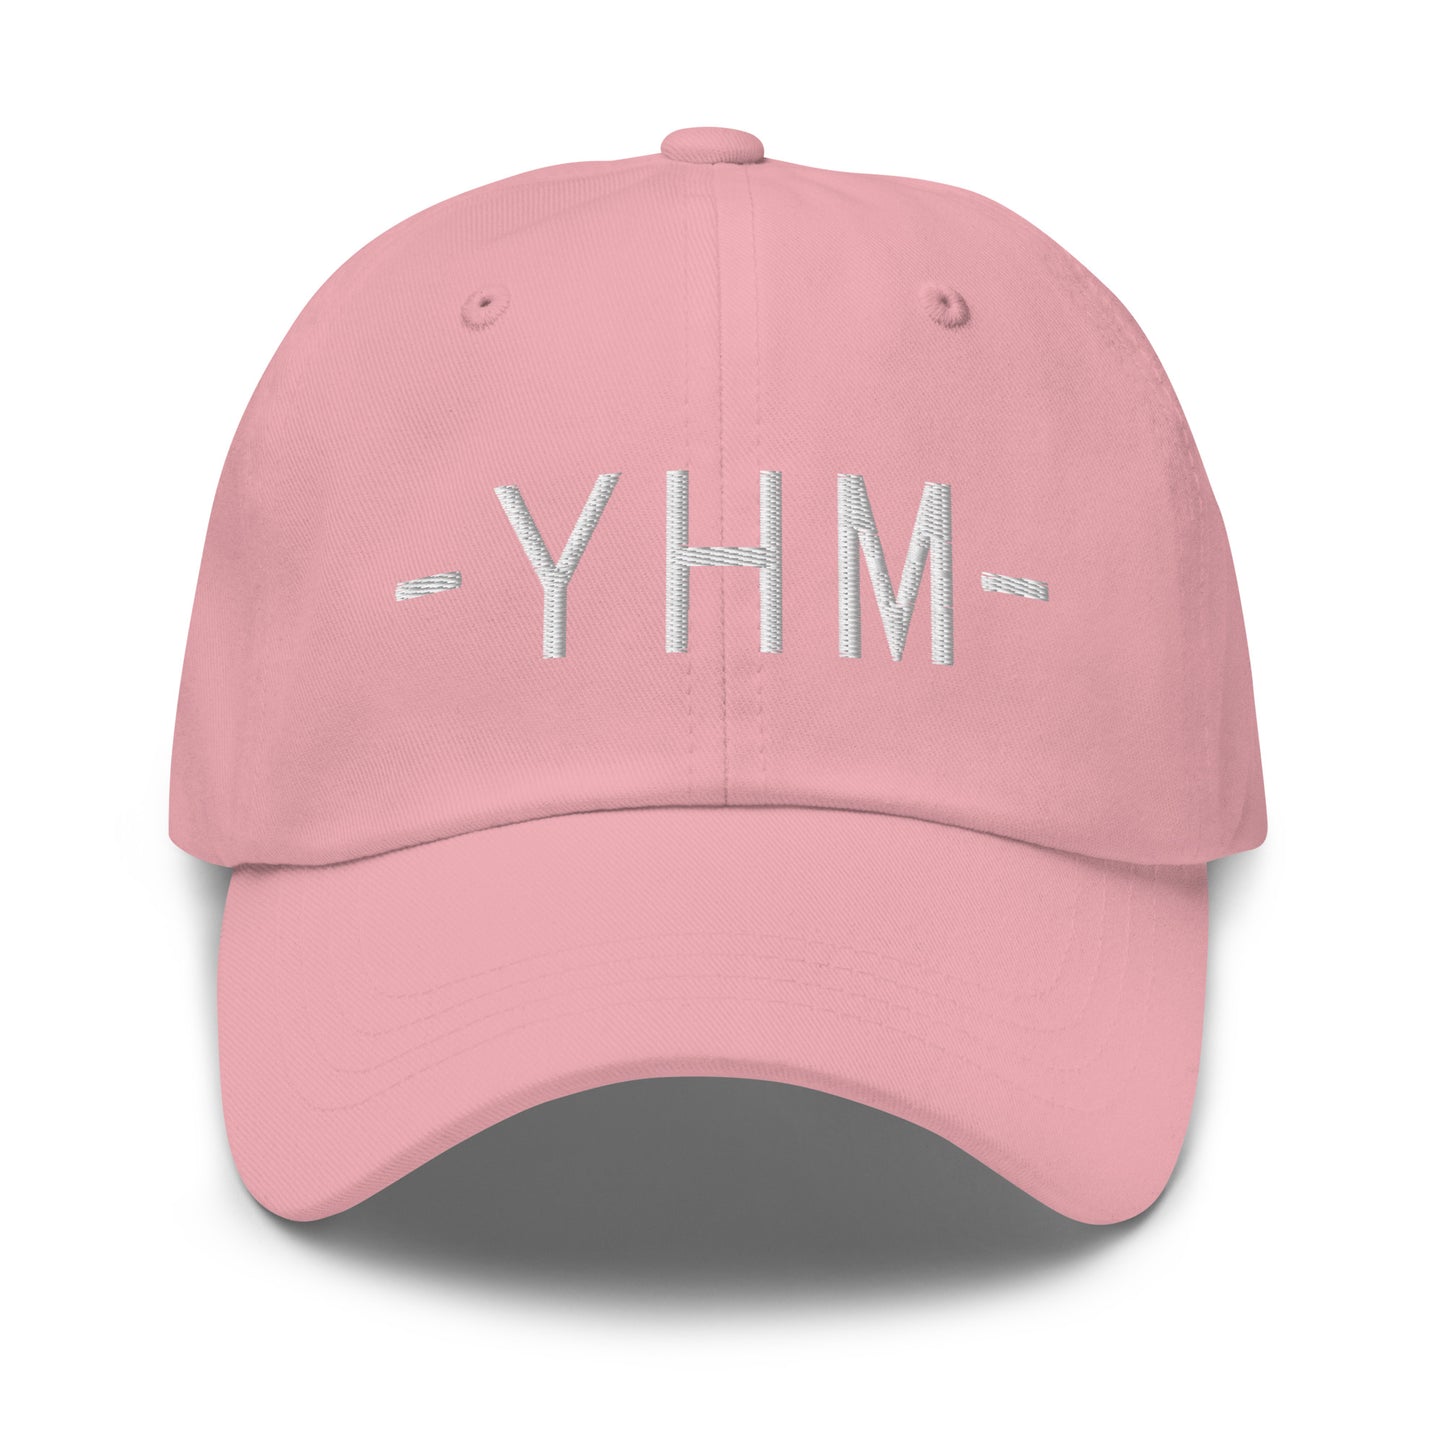 Souvenir Baseball Cap - White • YHM Hamilton • YHM Designs - Image 25